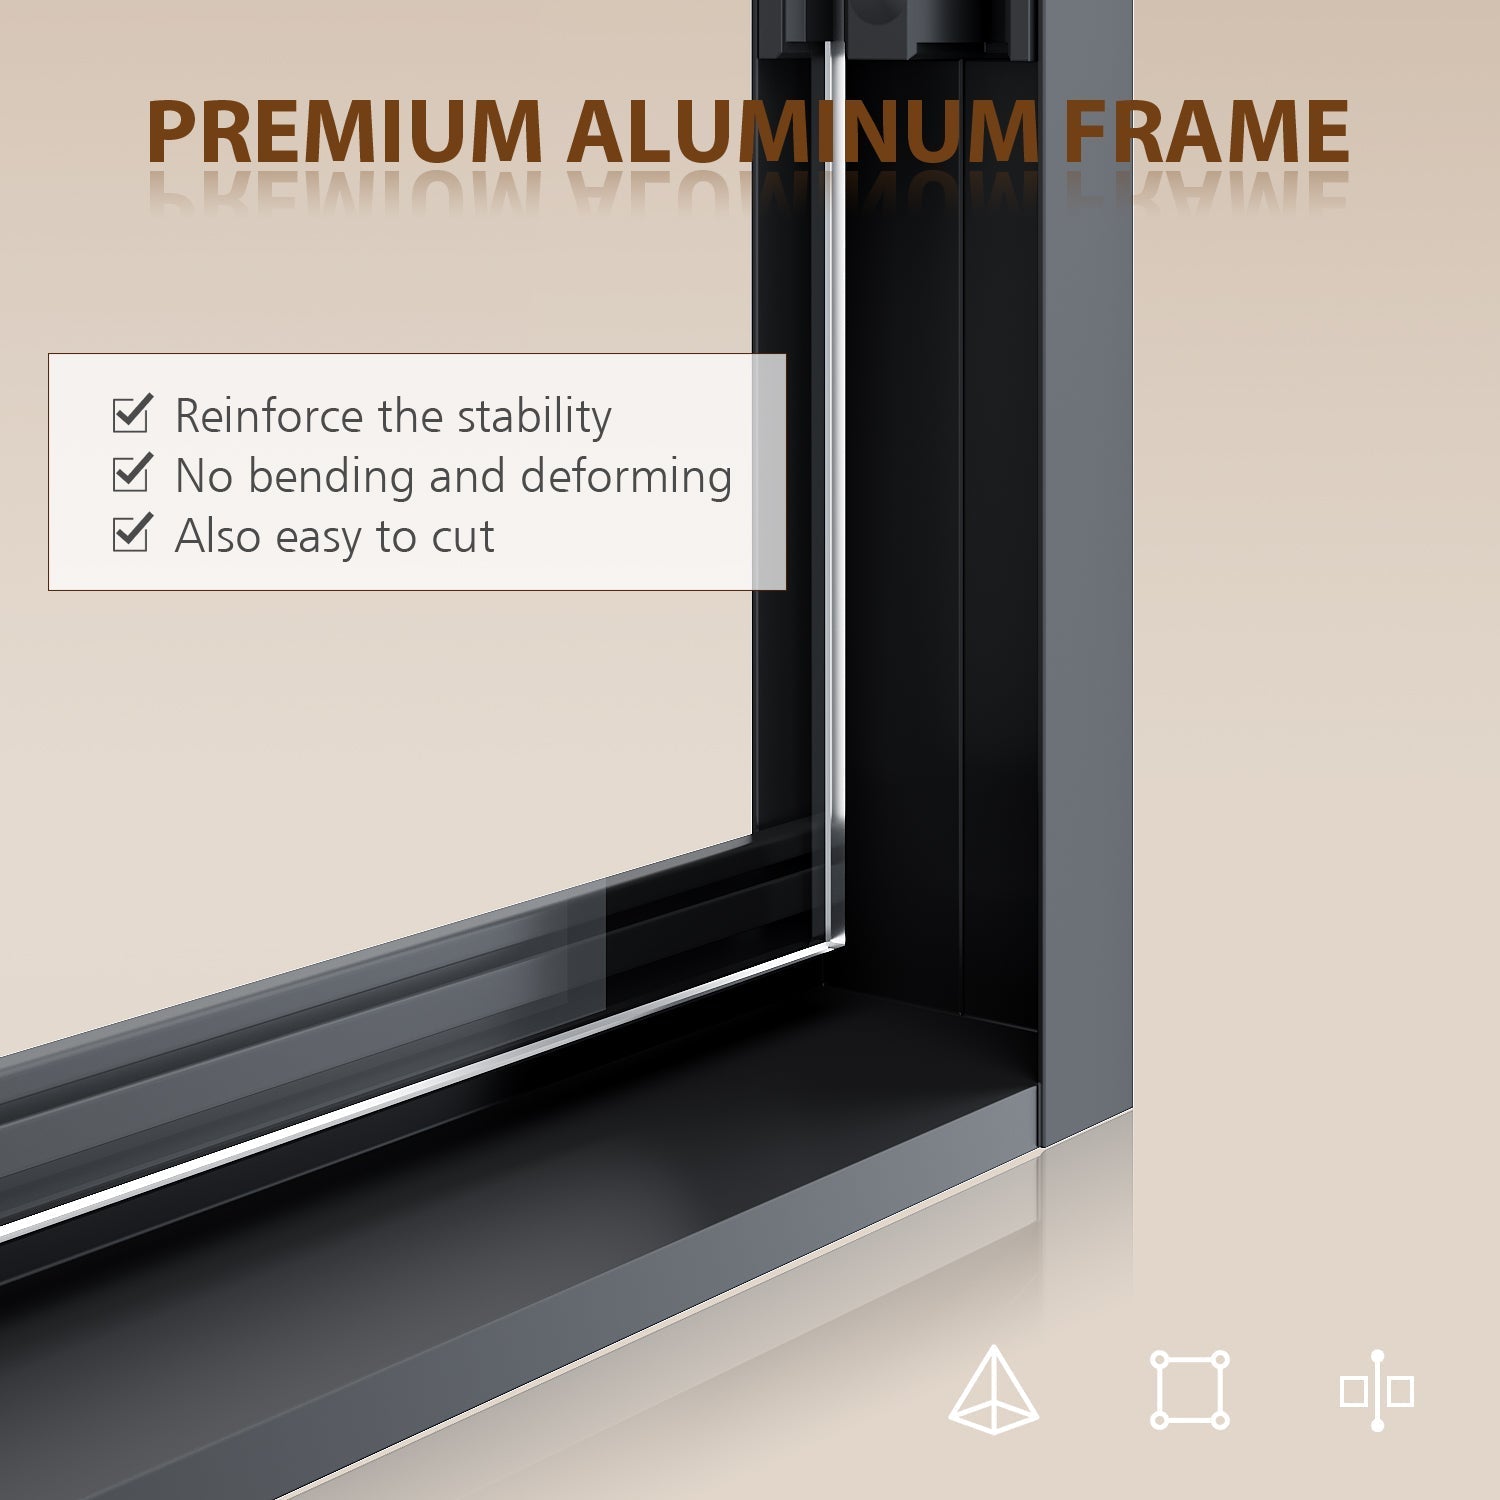 premium aluminum frame